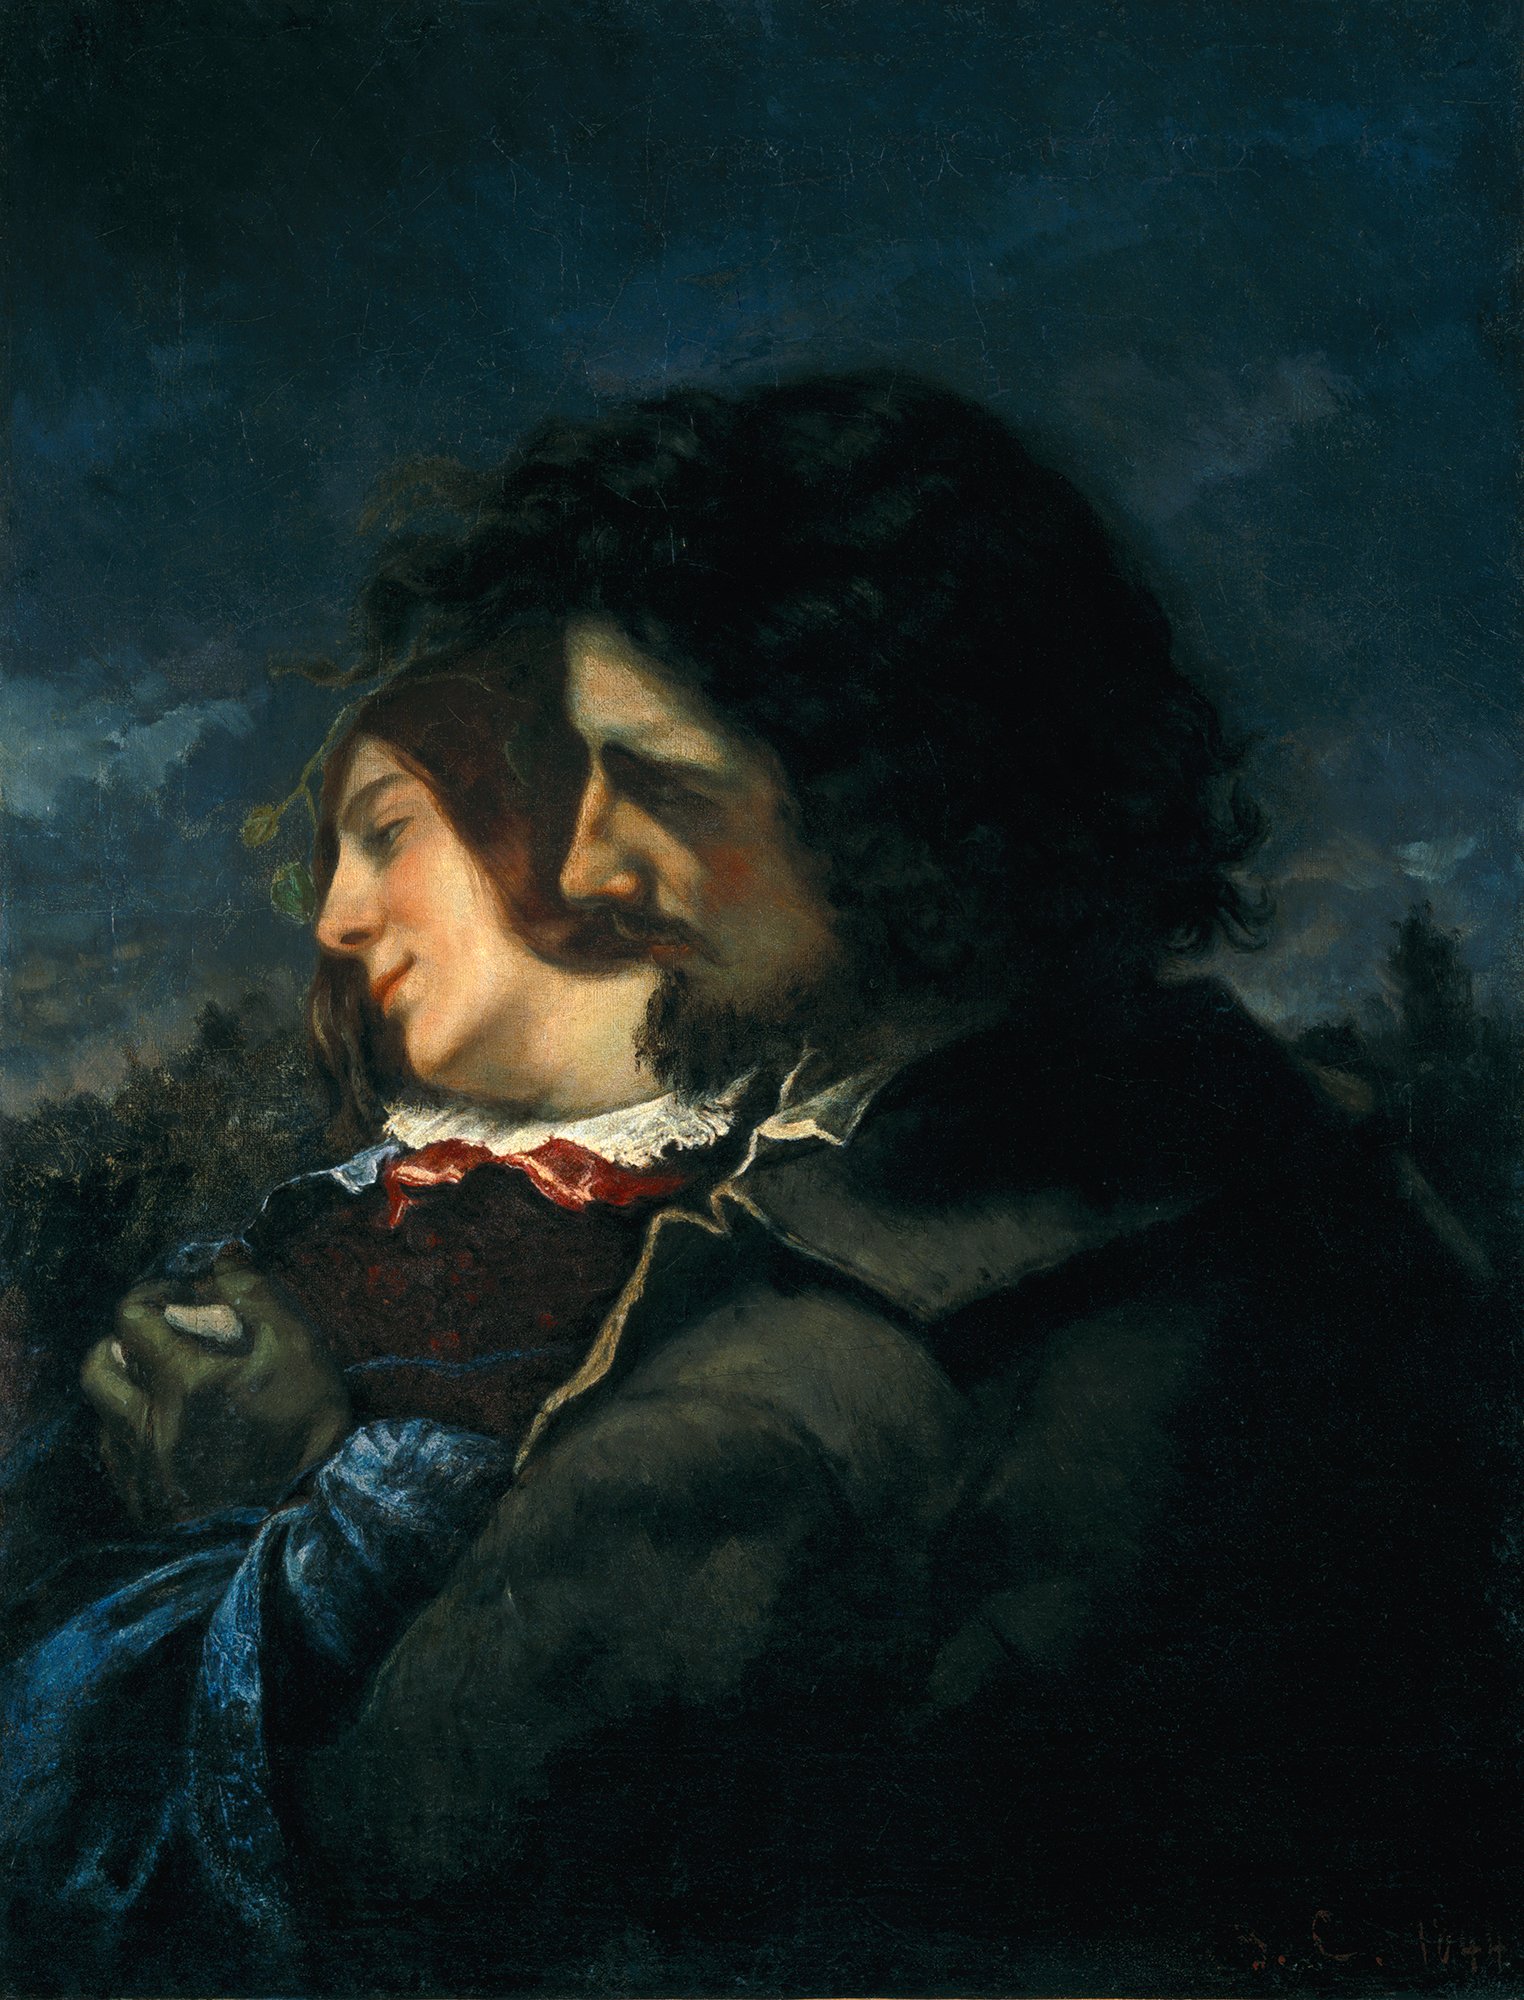 Abbildung des Werks "Die Liebenden auf dem Land" von Gustave Courbet aus dem Jahr 1844. Zu sehen sind zwei Personen im Profil. Die hintere Person ist deutlich heller zu sehen.